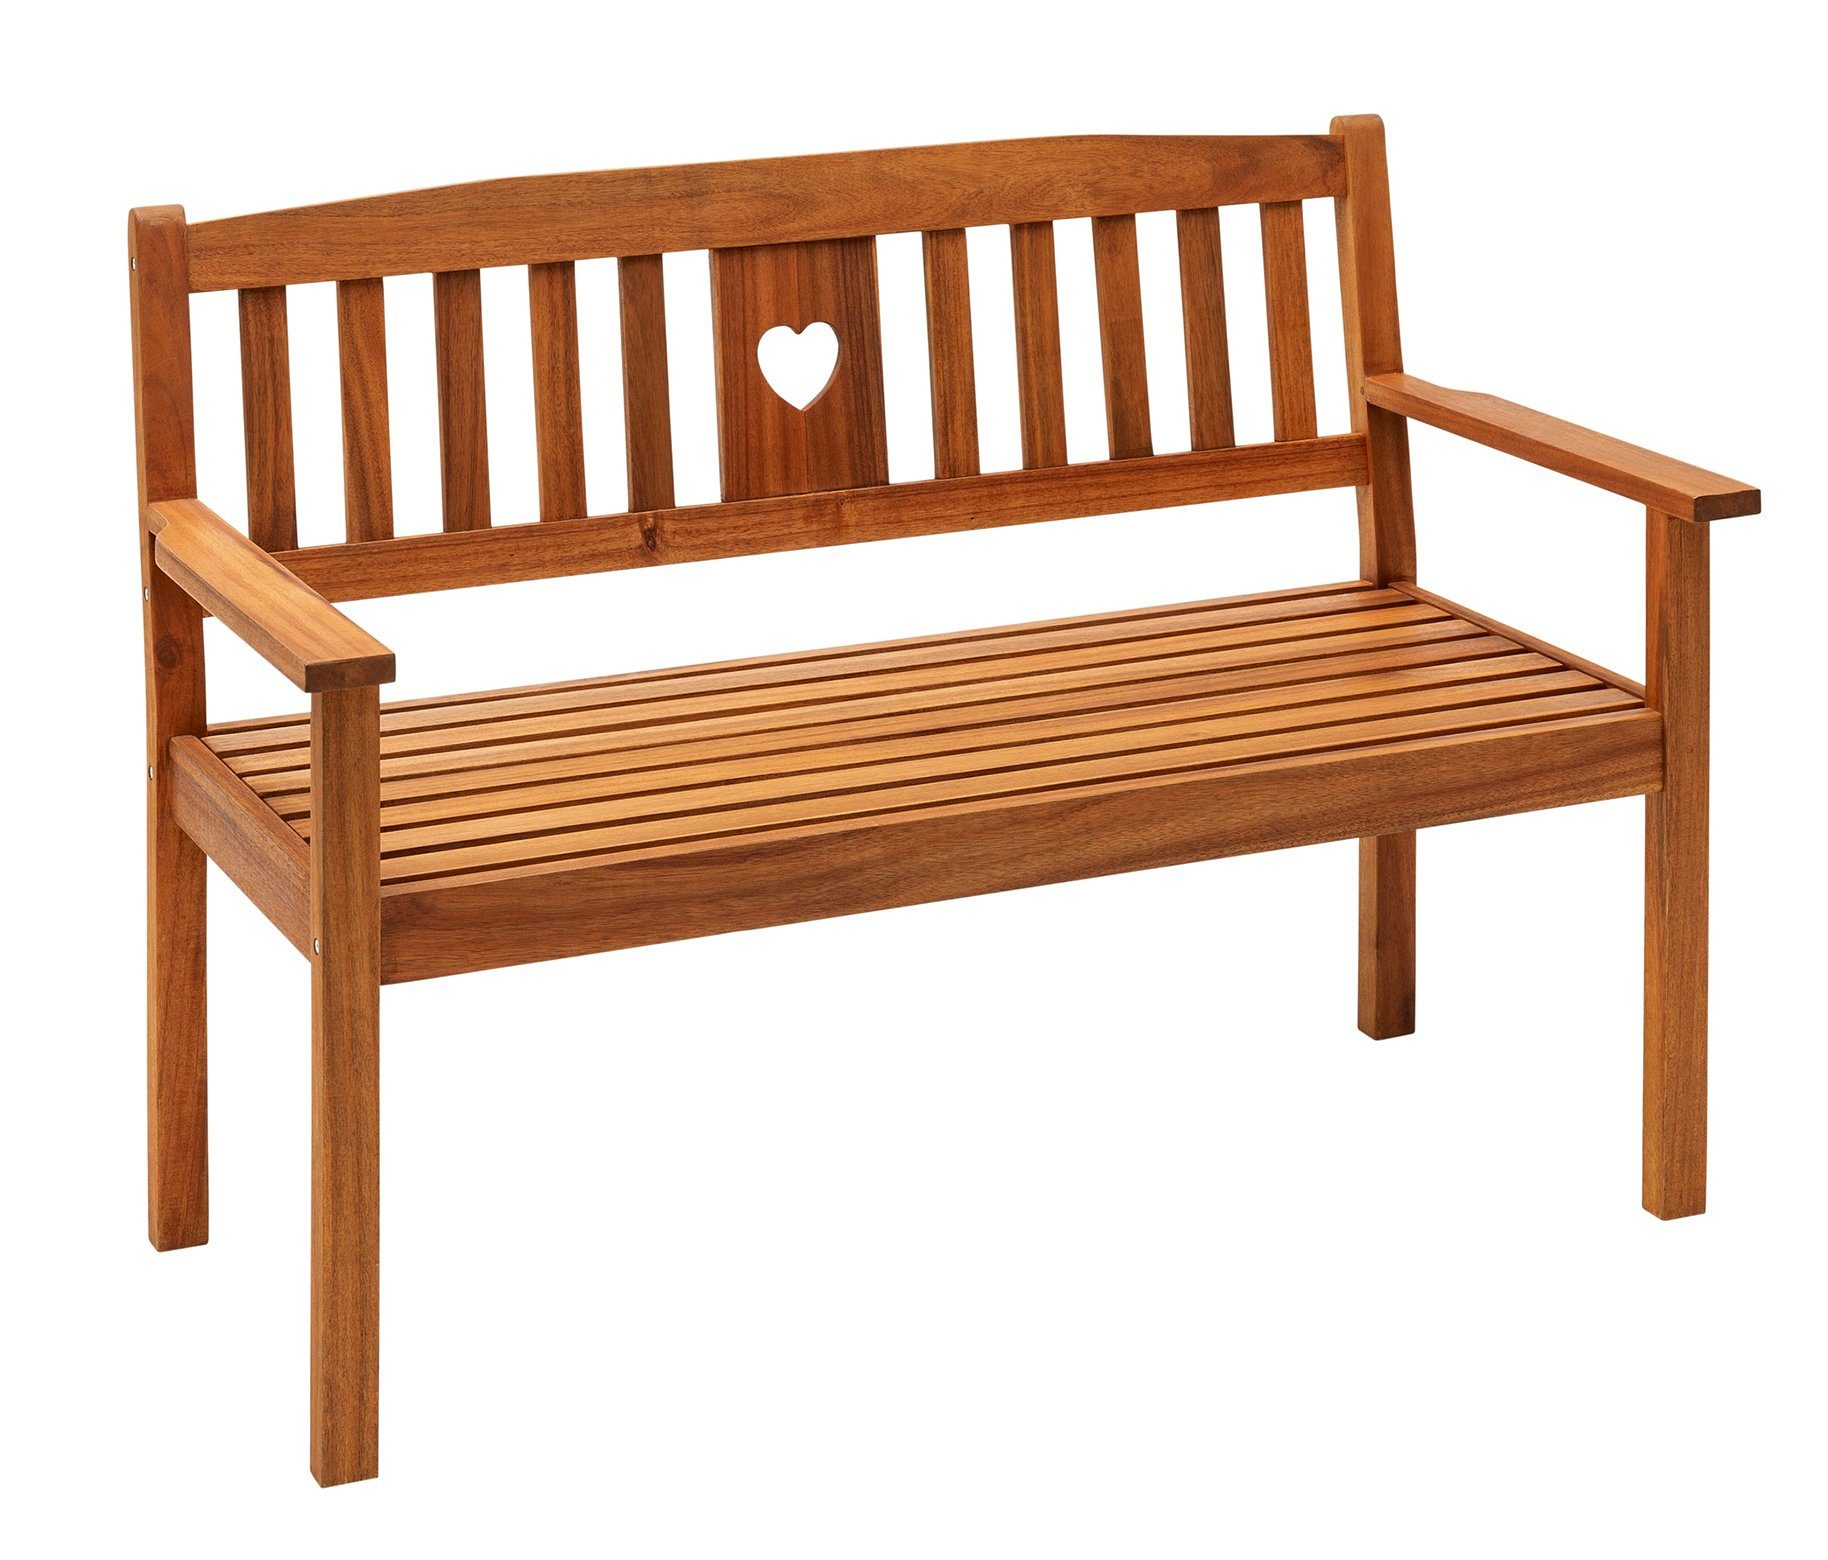 Dehner Gartenbank Gartenbank Heart, 2- oder 3-Sitzer, Farbe braun, Gartenbank aus FSC®-zertifiziertem Akazienholz mit Landhaus-Charme